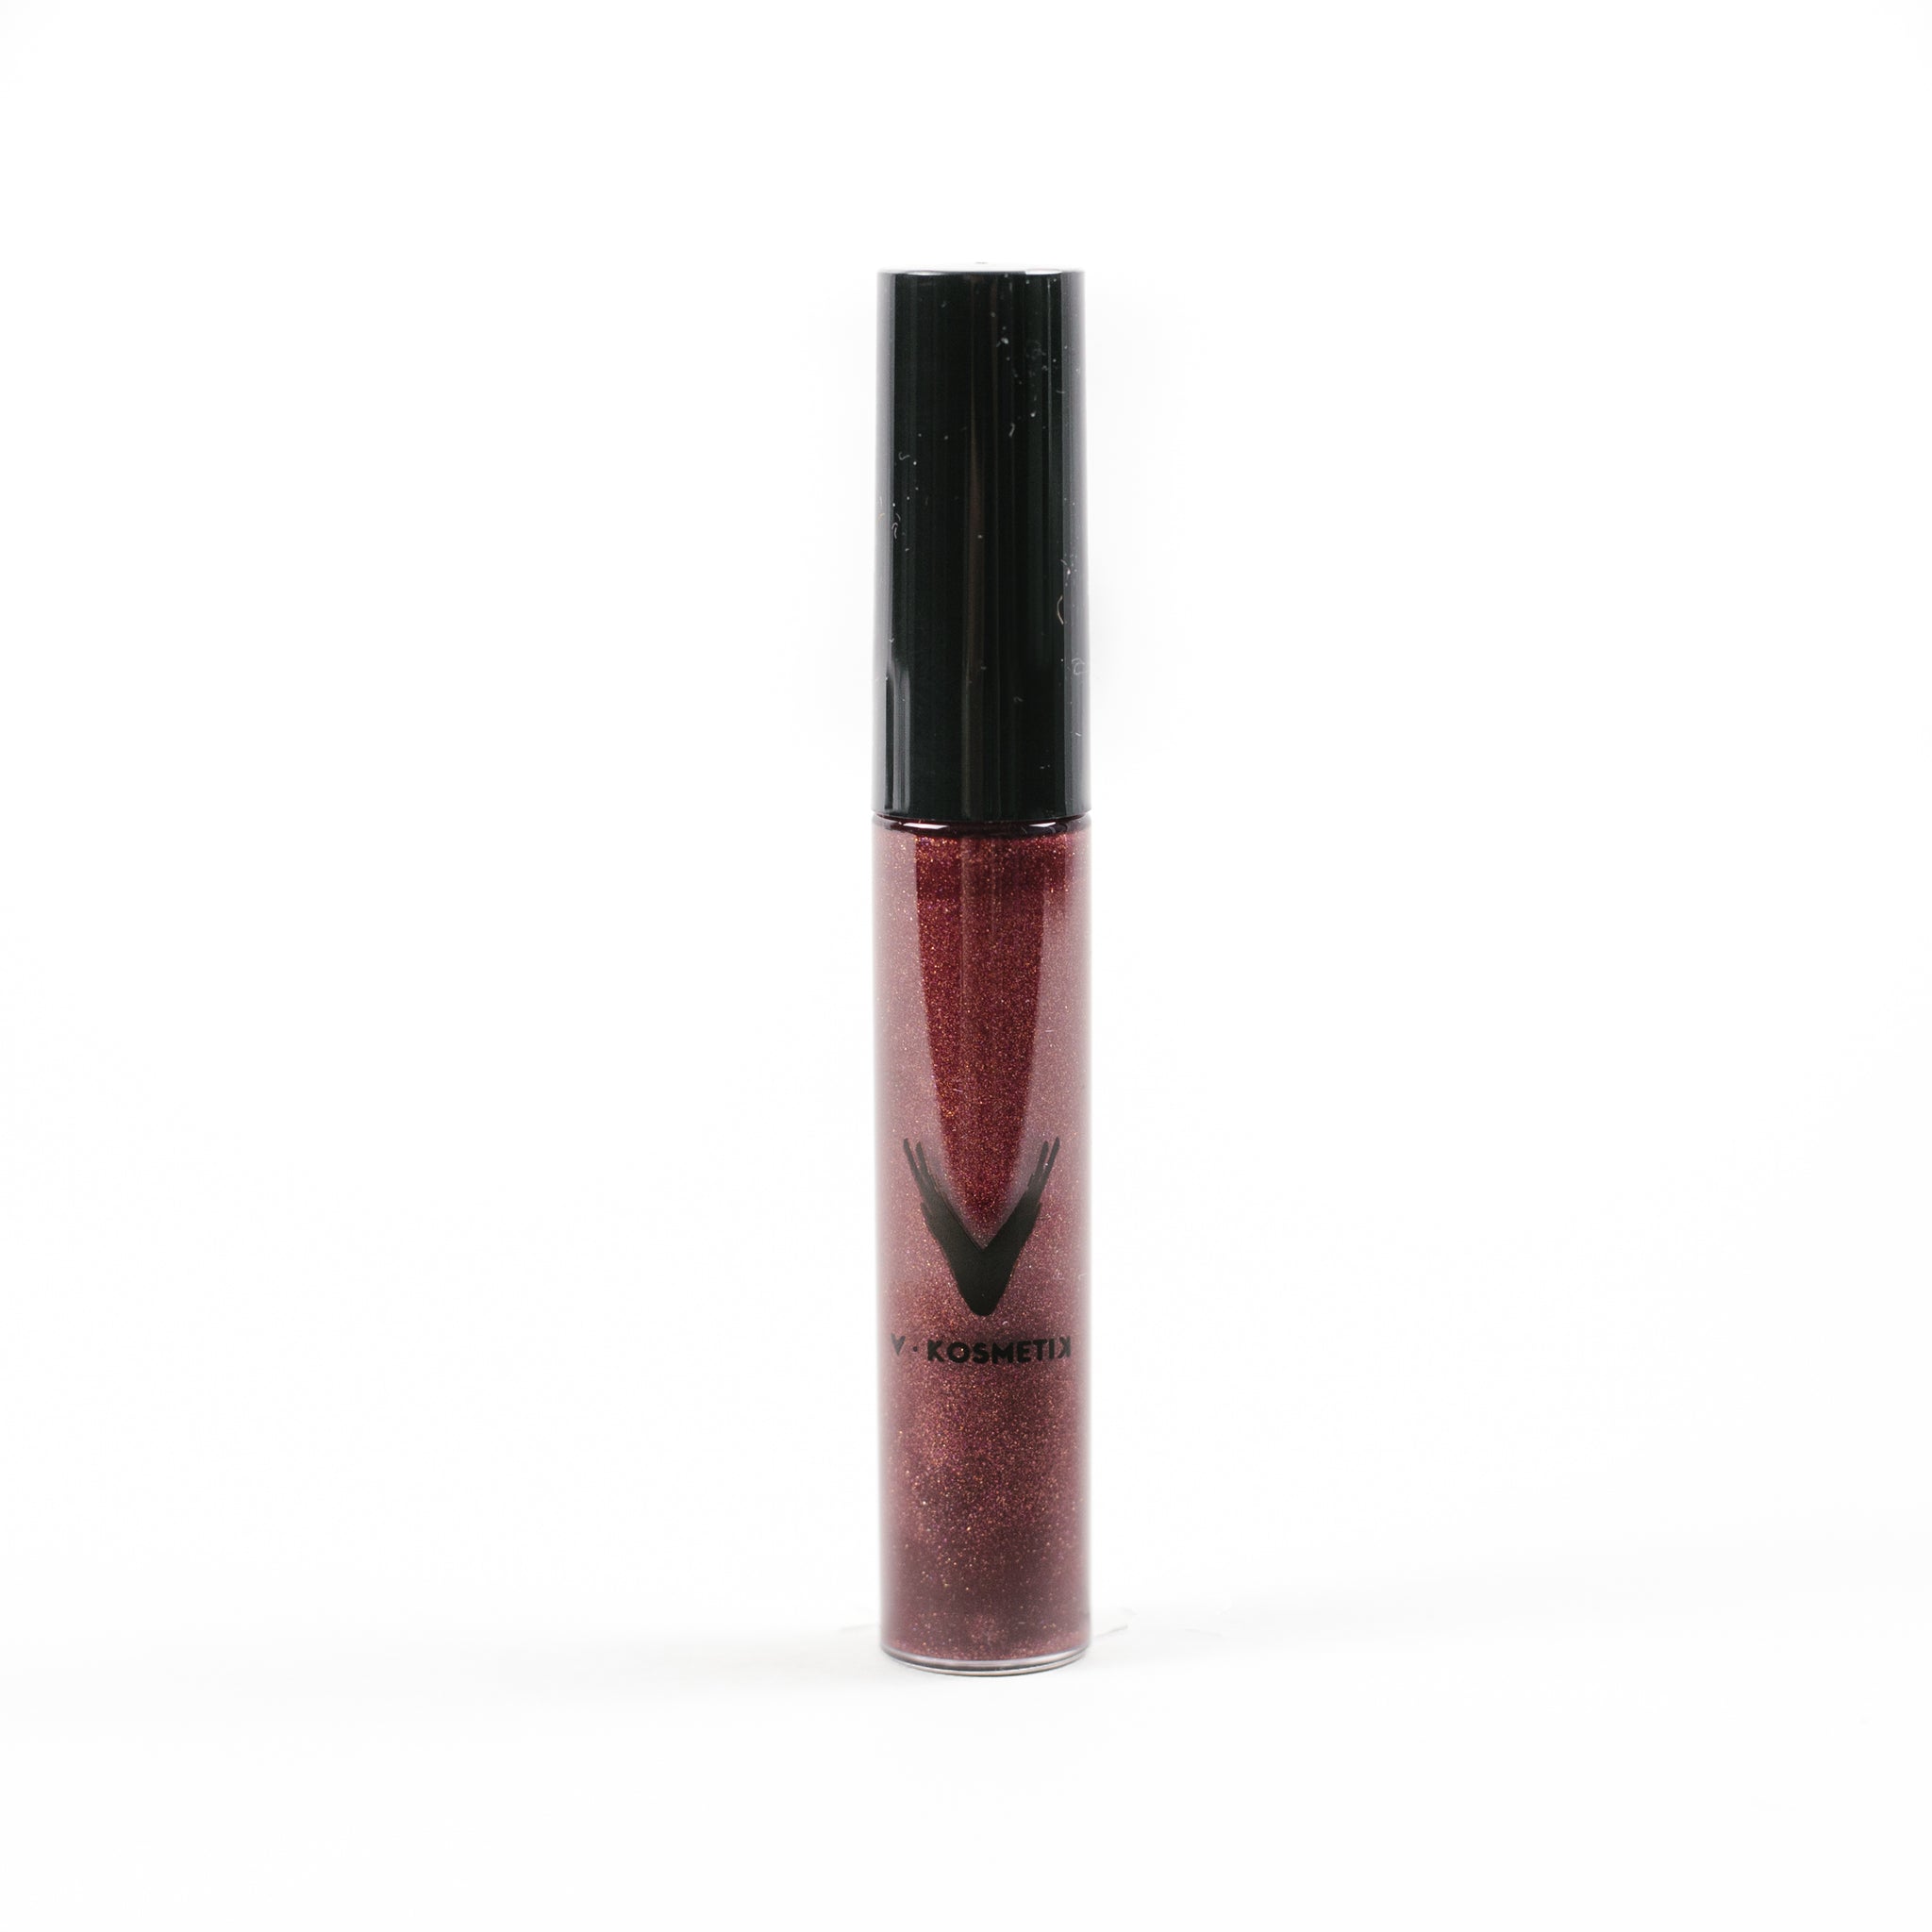 Full Coverage Lipstick & Lipgloss | V Kosmetik